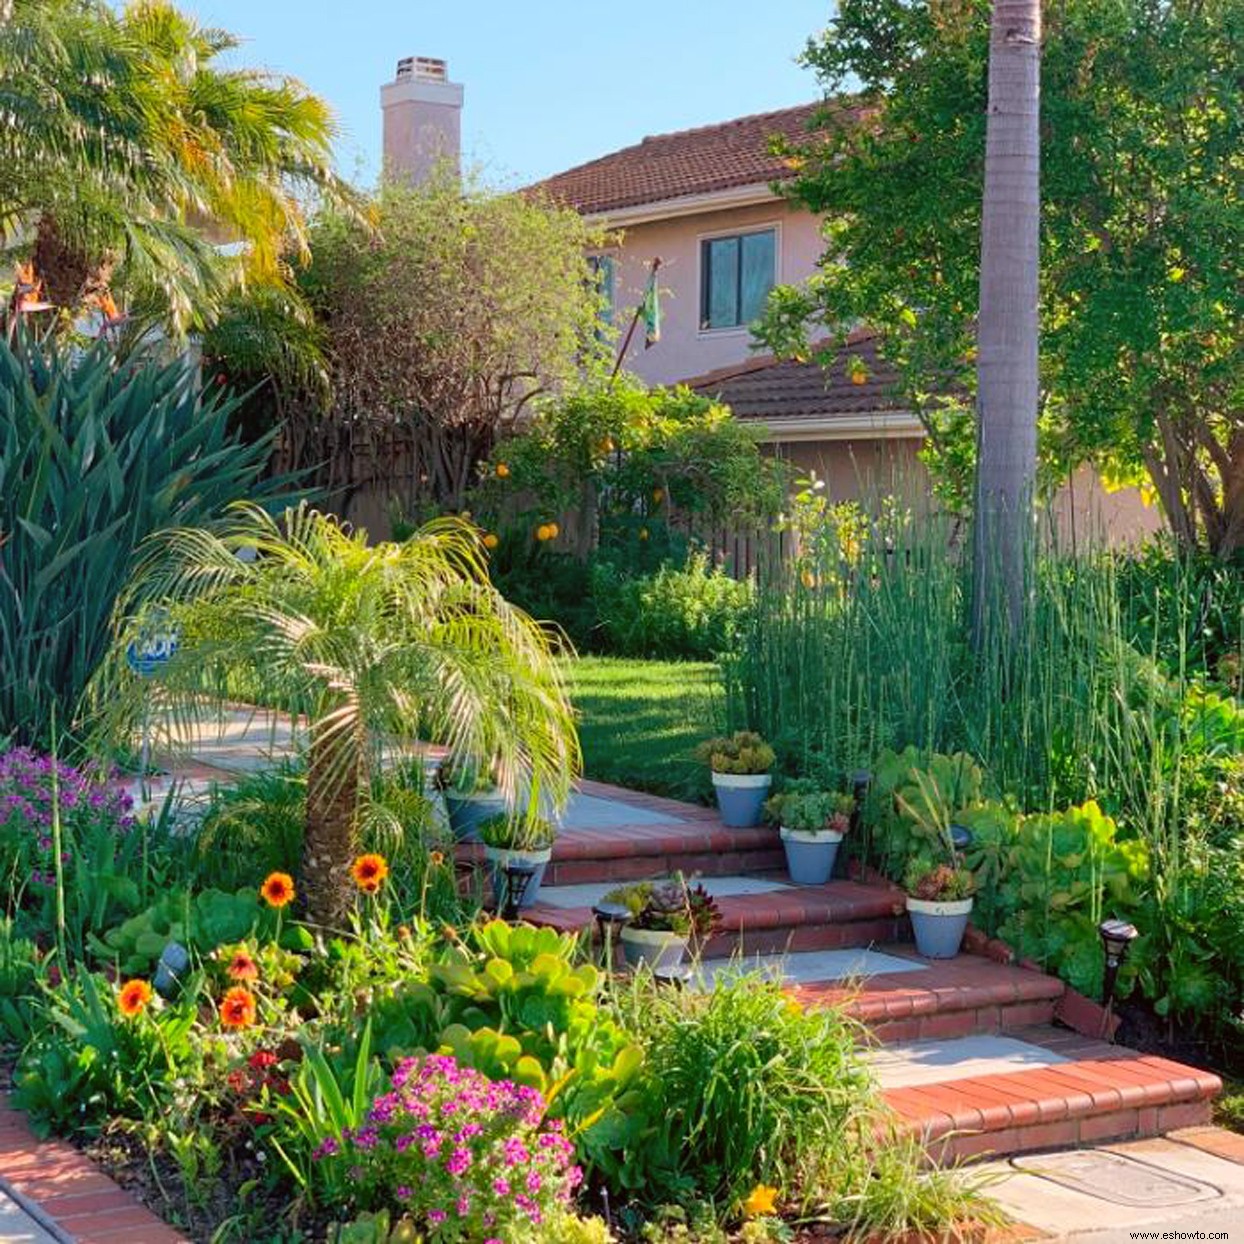 Estos jardines de la vida real nos impresionaron como finalistas de Americas Best Front Yard 